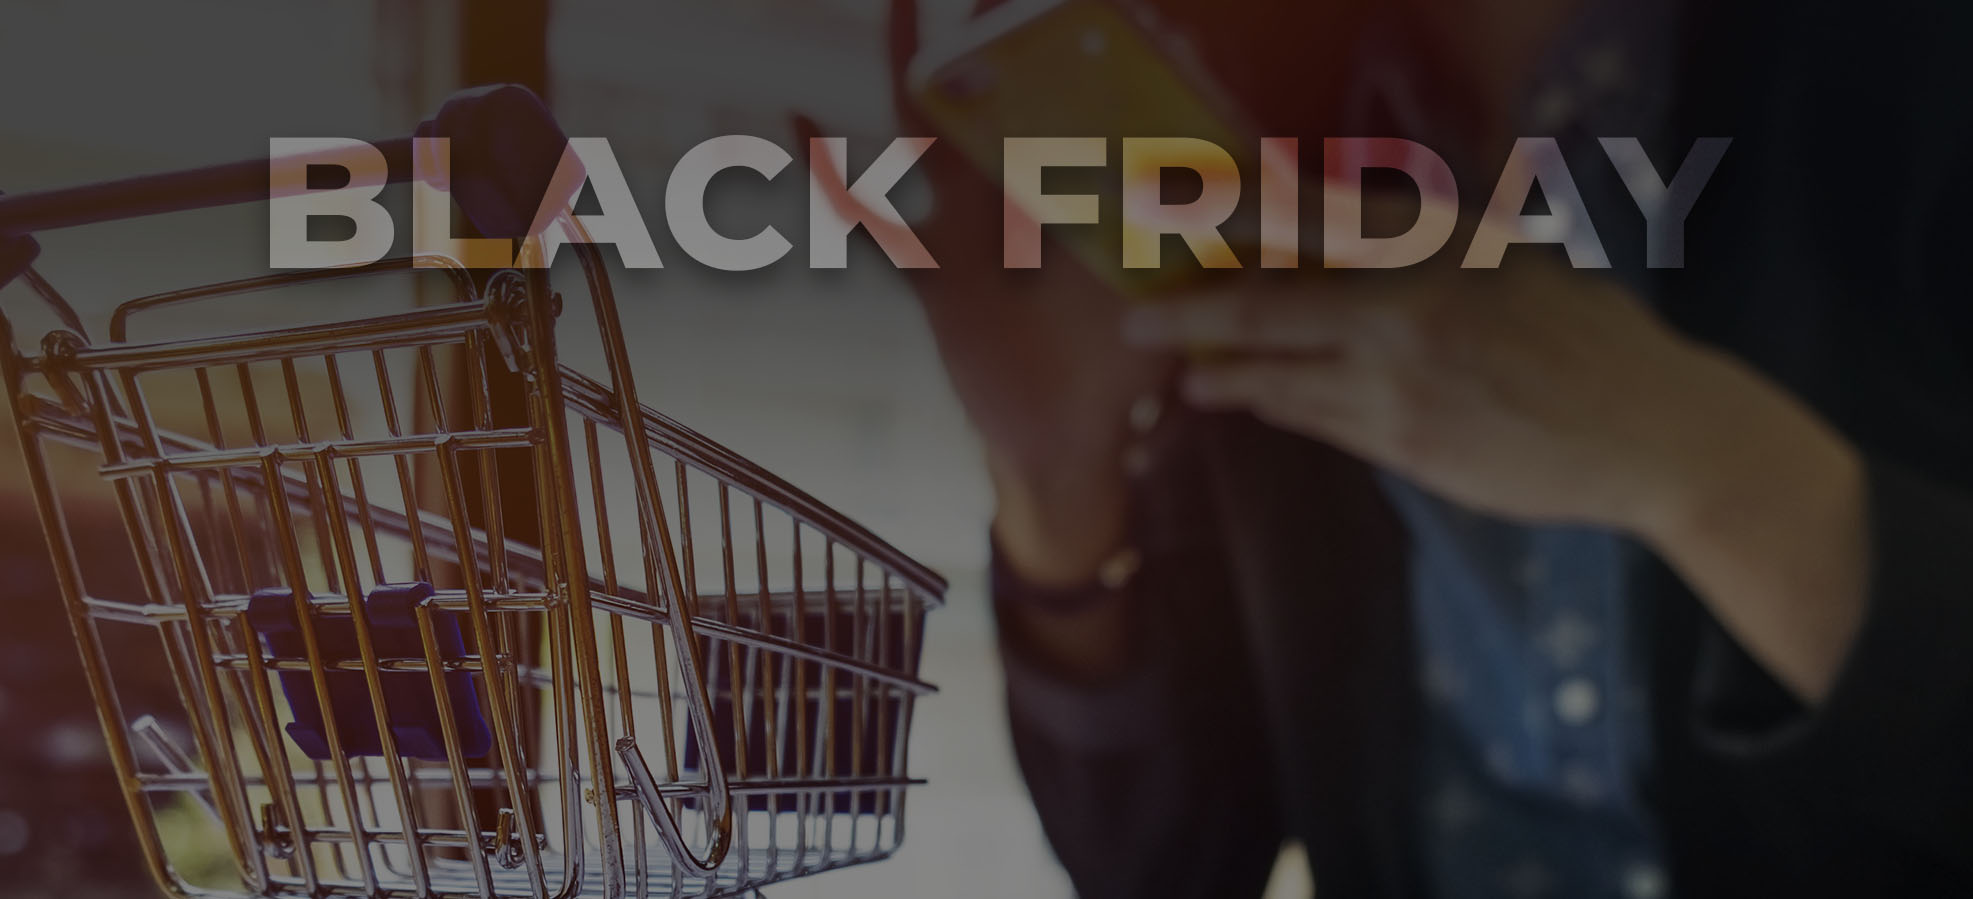 Black Friday: Estratégias Inteligentes para Aumentar Lucros sem Dar Descontos